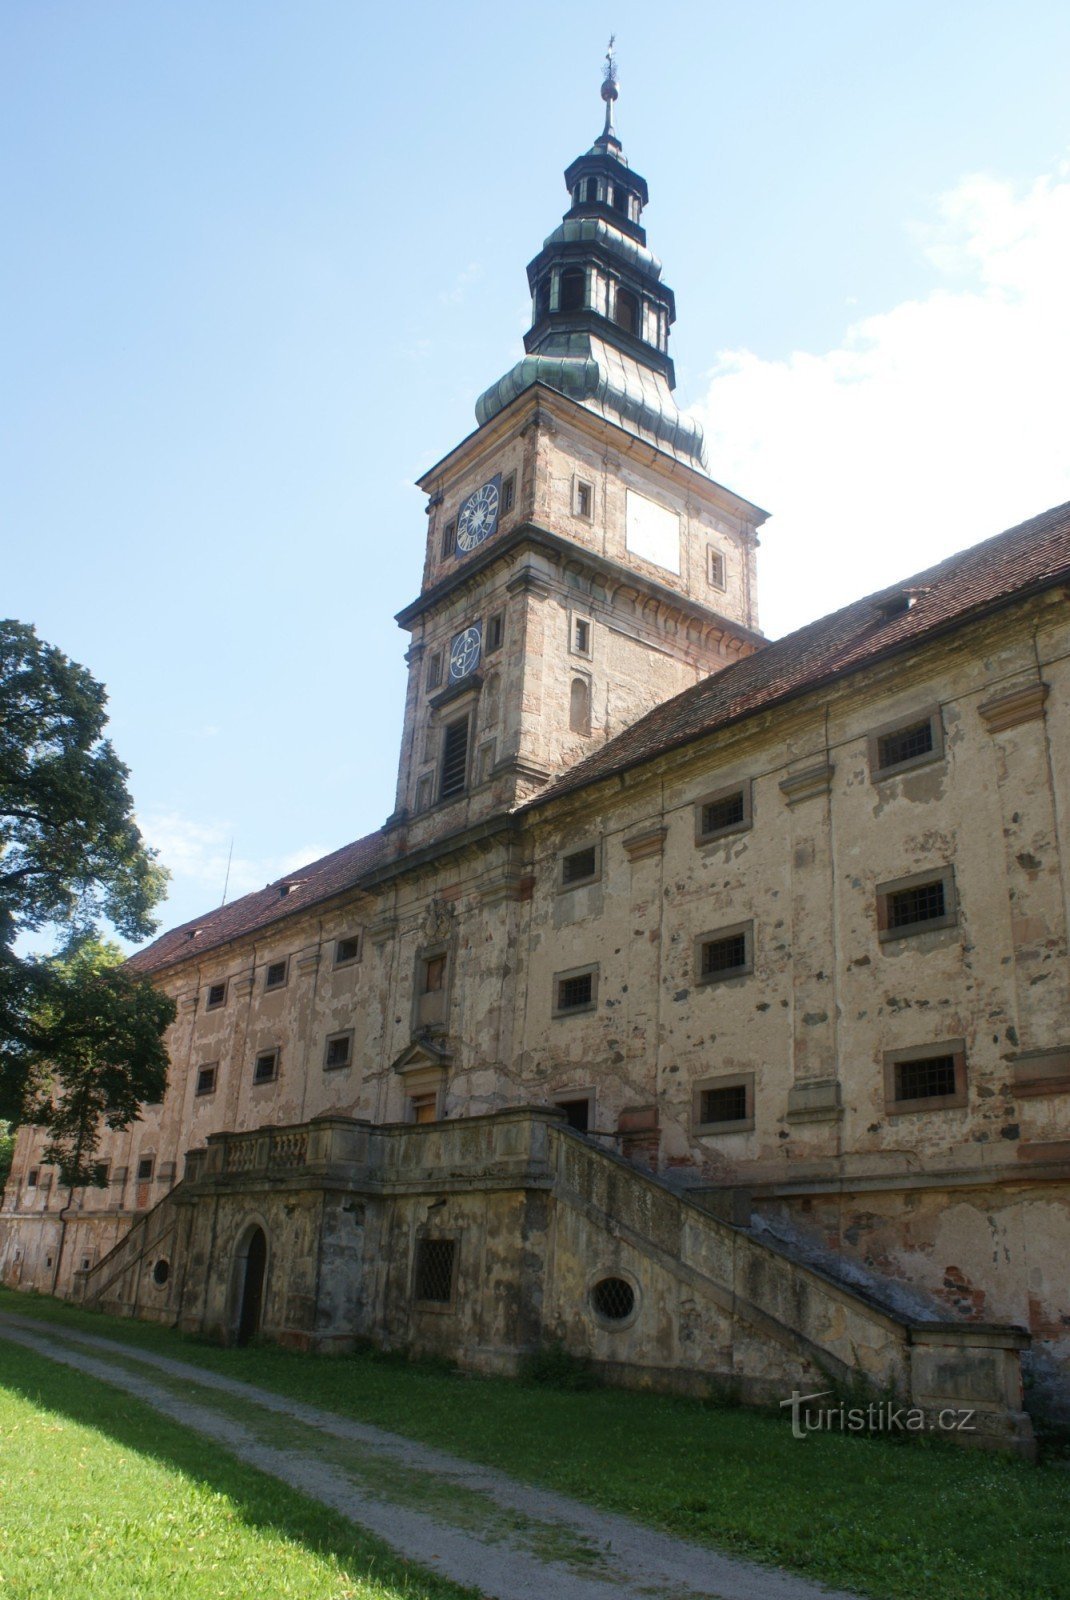 Tu viện Plasy - vựa lúa kiểu baroque với nhà nguyện và tháp đồng hồ